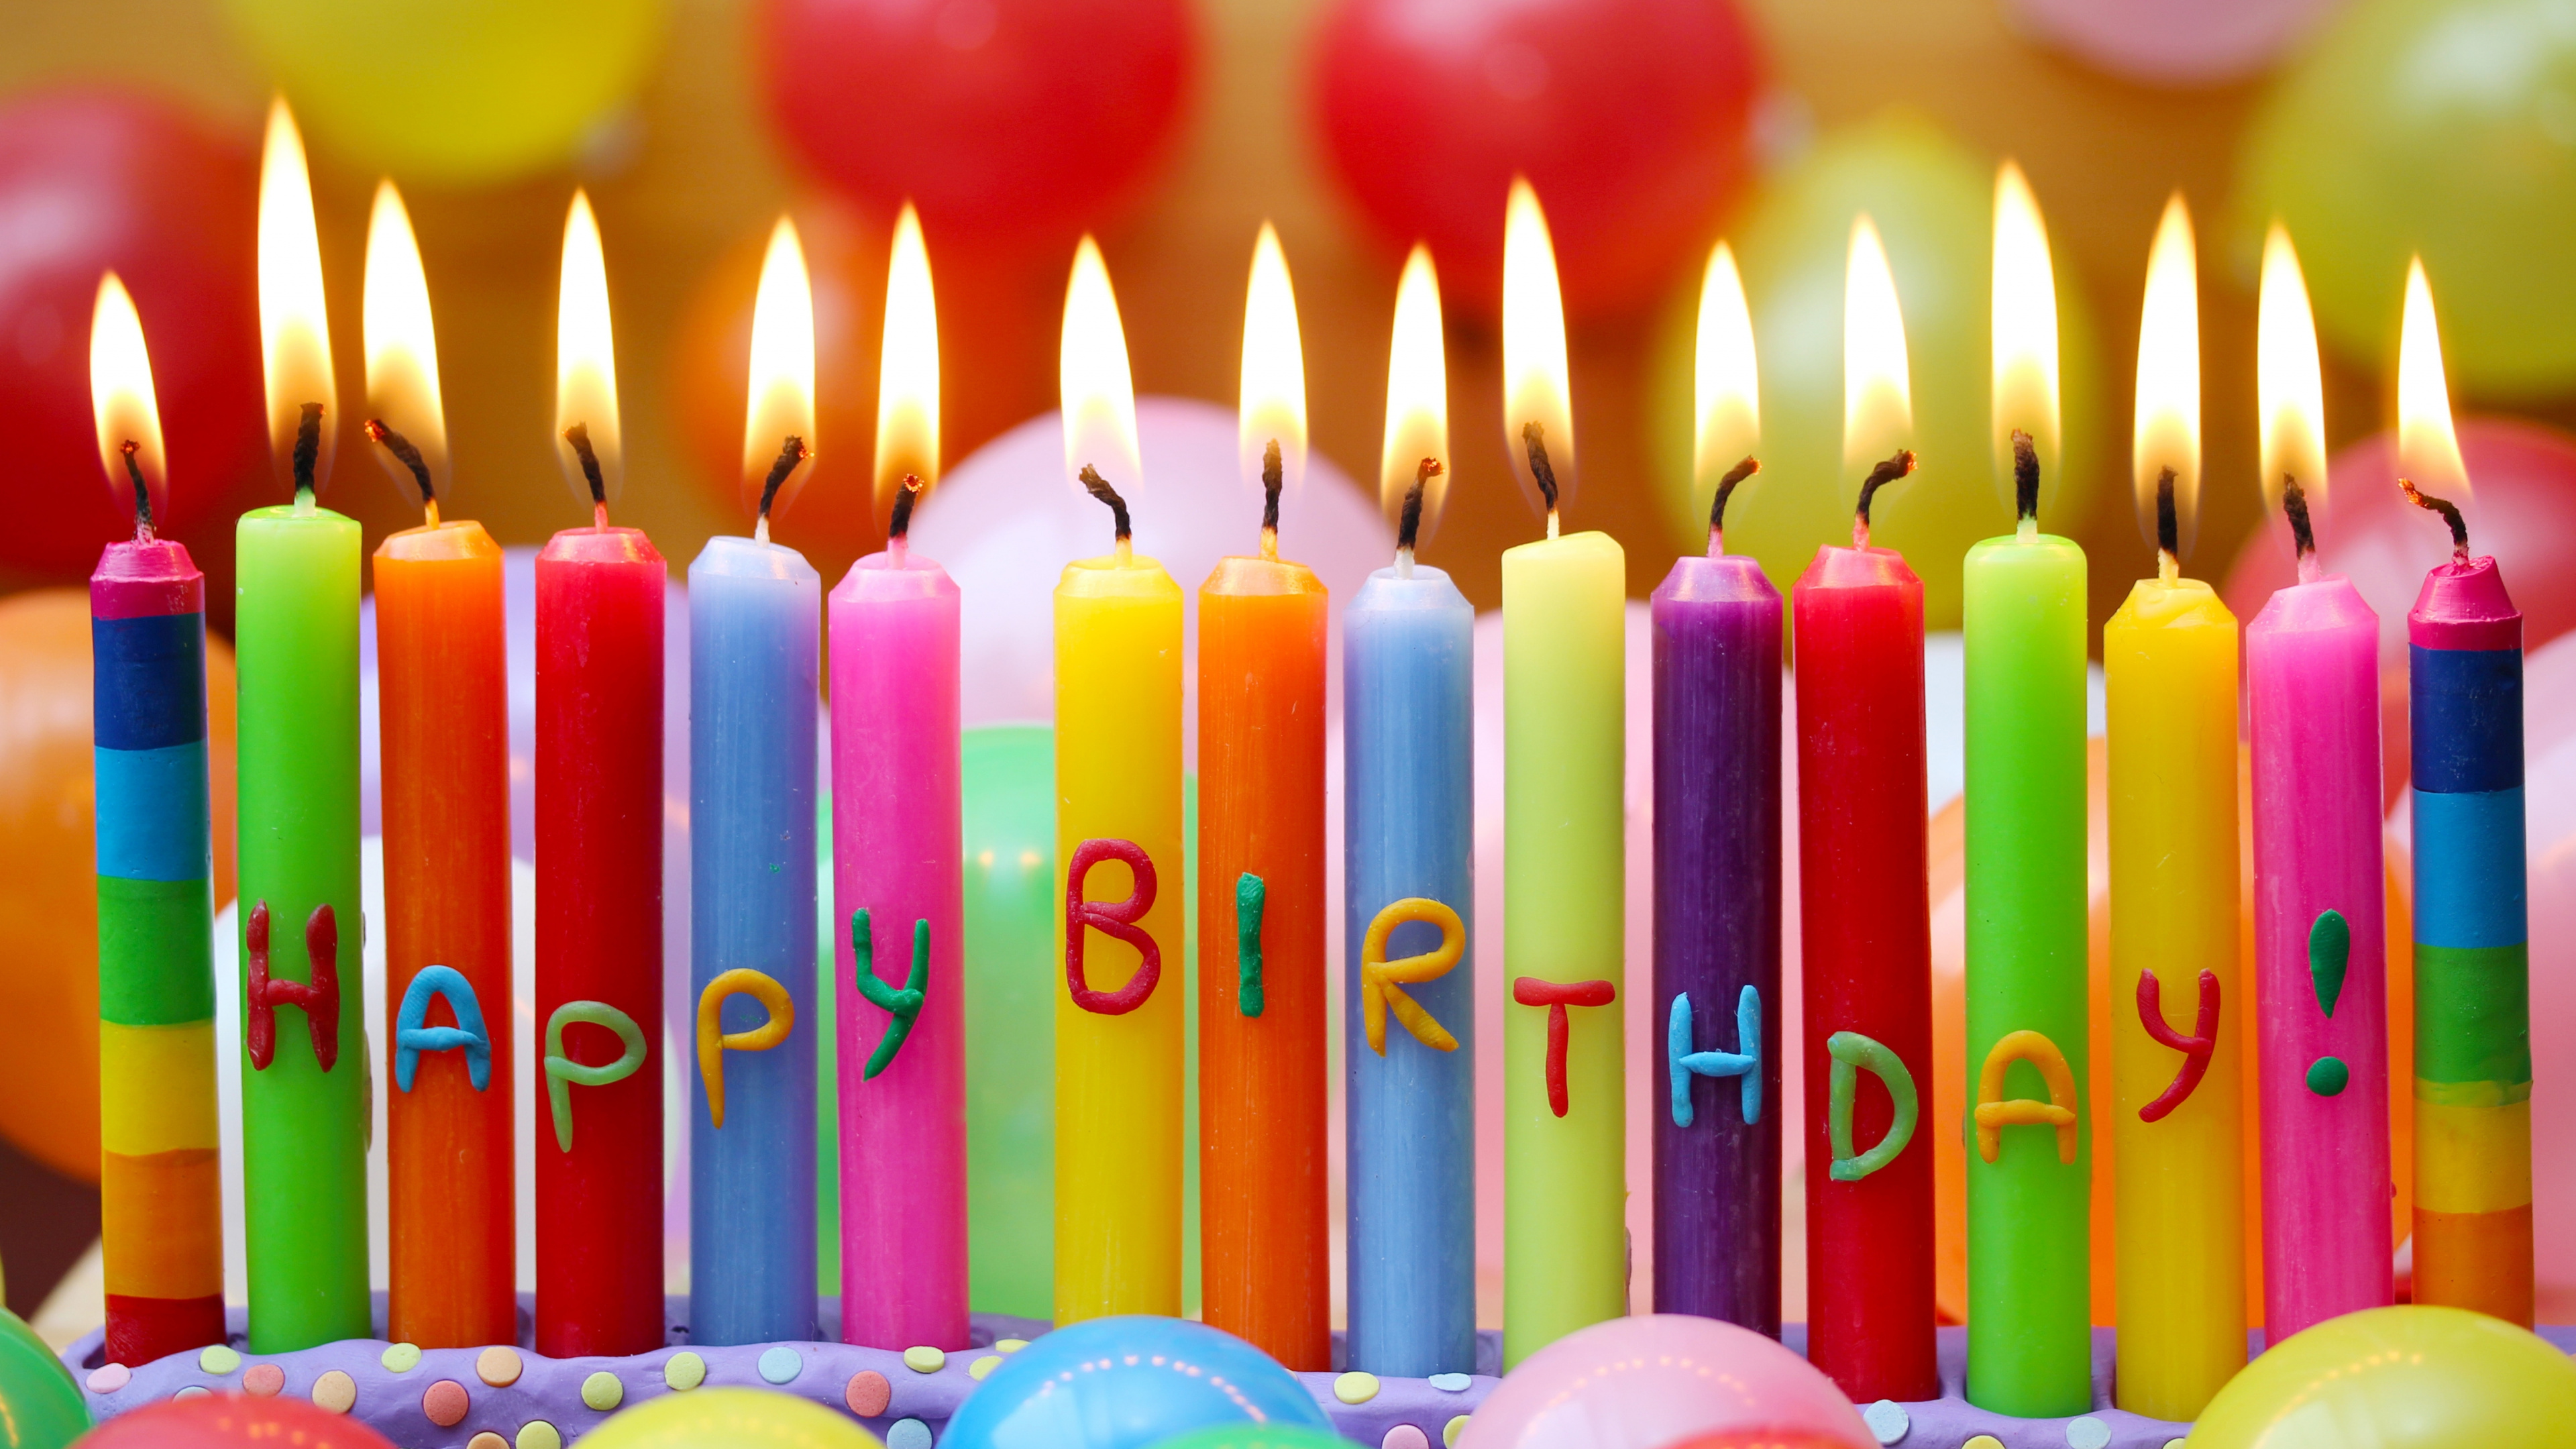 生日快乐, 生日, 缔约方, 生日蛋糕, 缔约方供应 壁纸 3840x2160 允许